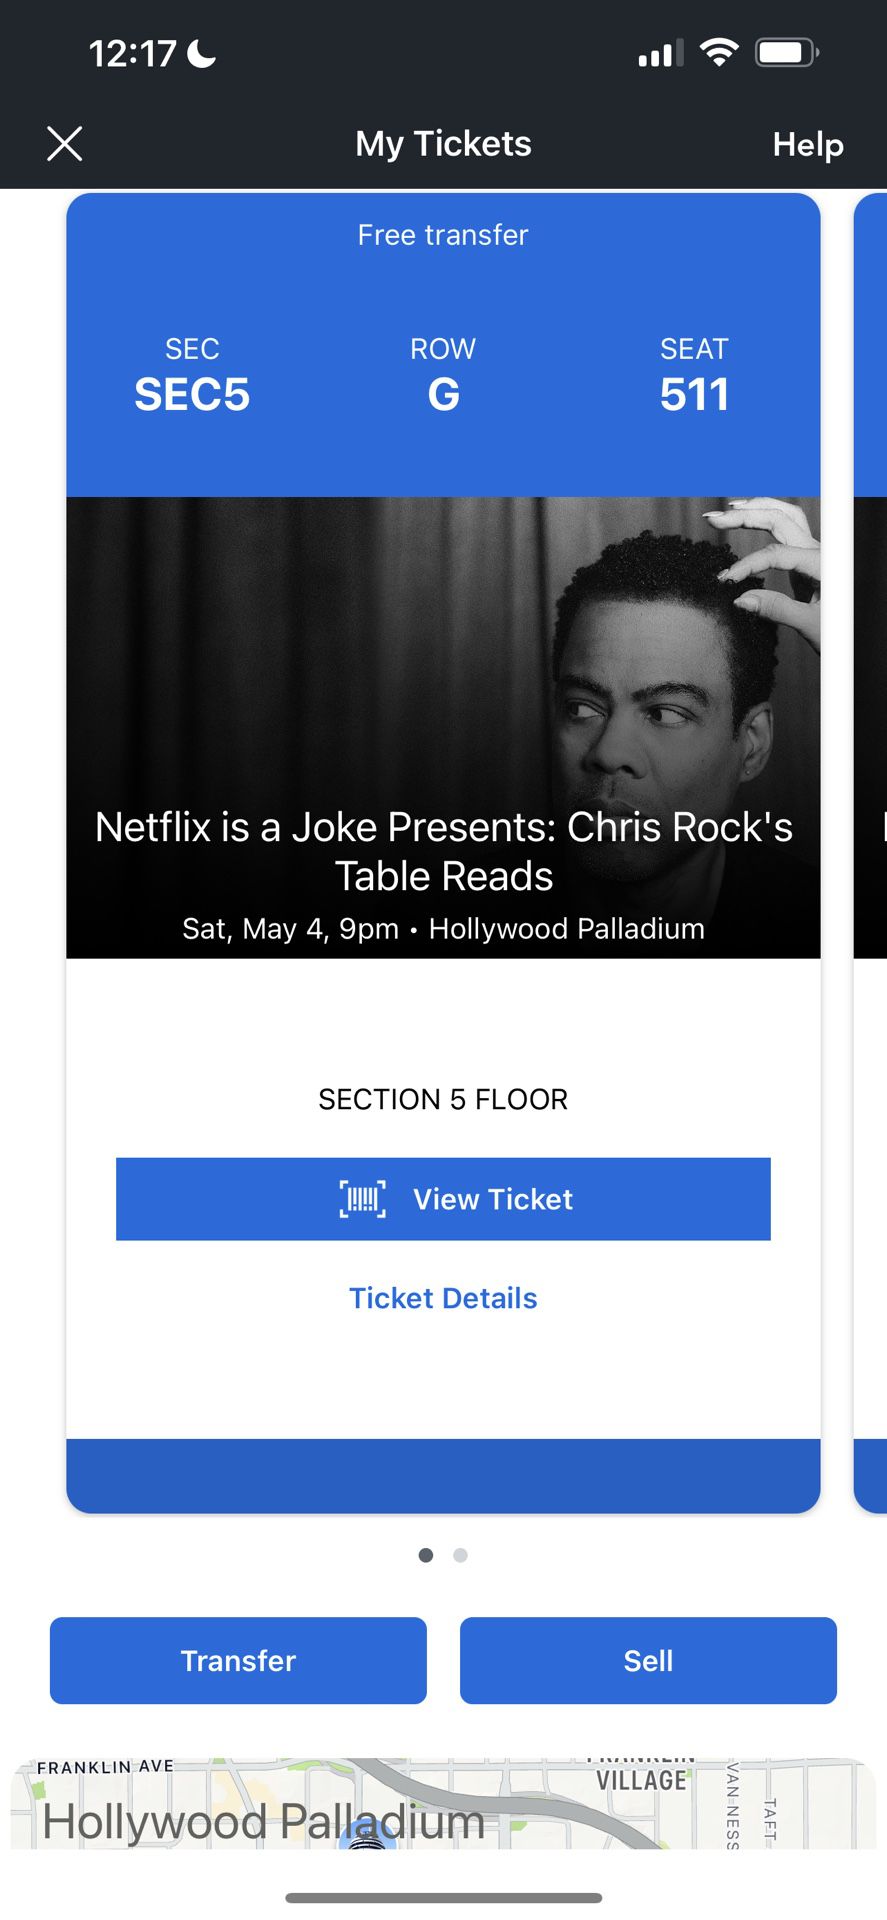 Netflix is a Joke Presents: Chris Rock’s Table Reads tickets